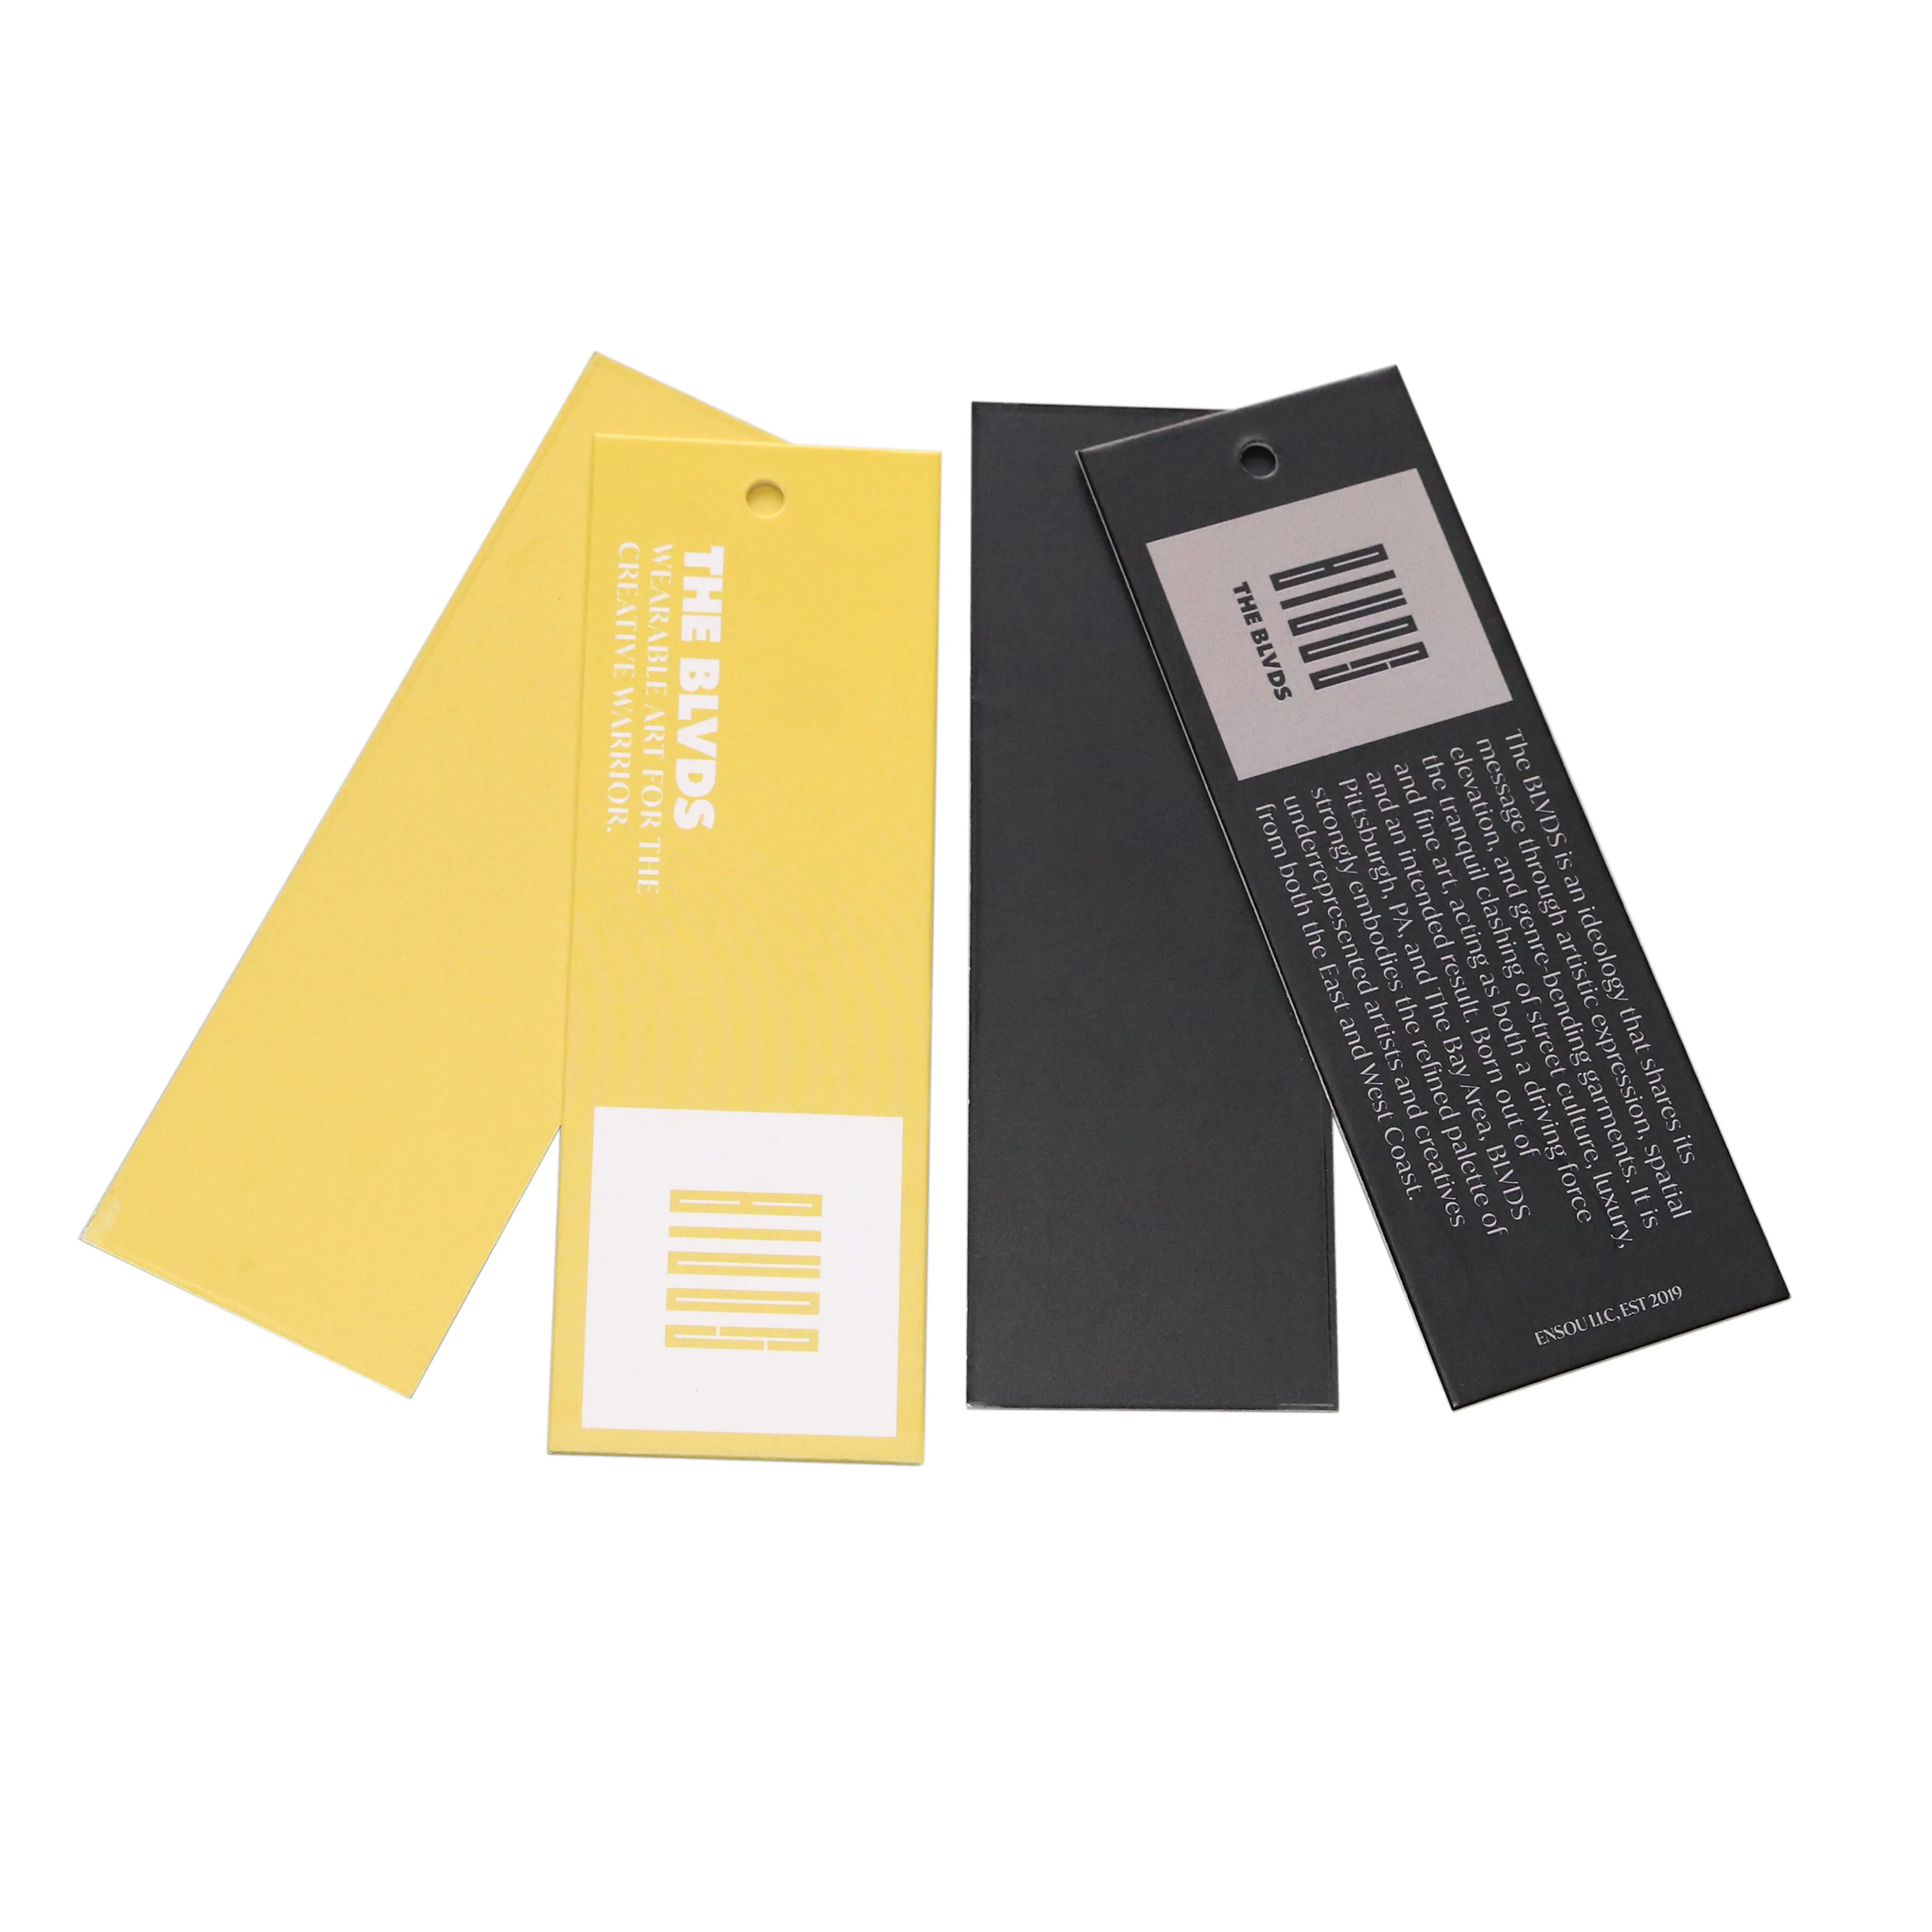 ป้ายแขวนเสื้อผ้าสีเหลืองและสีดำพิมพ์ลายโลโก้หนา600กรัมพร้อมสายริบบิ้นรีไซเคิลออกแบบได้ตามต้องการ